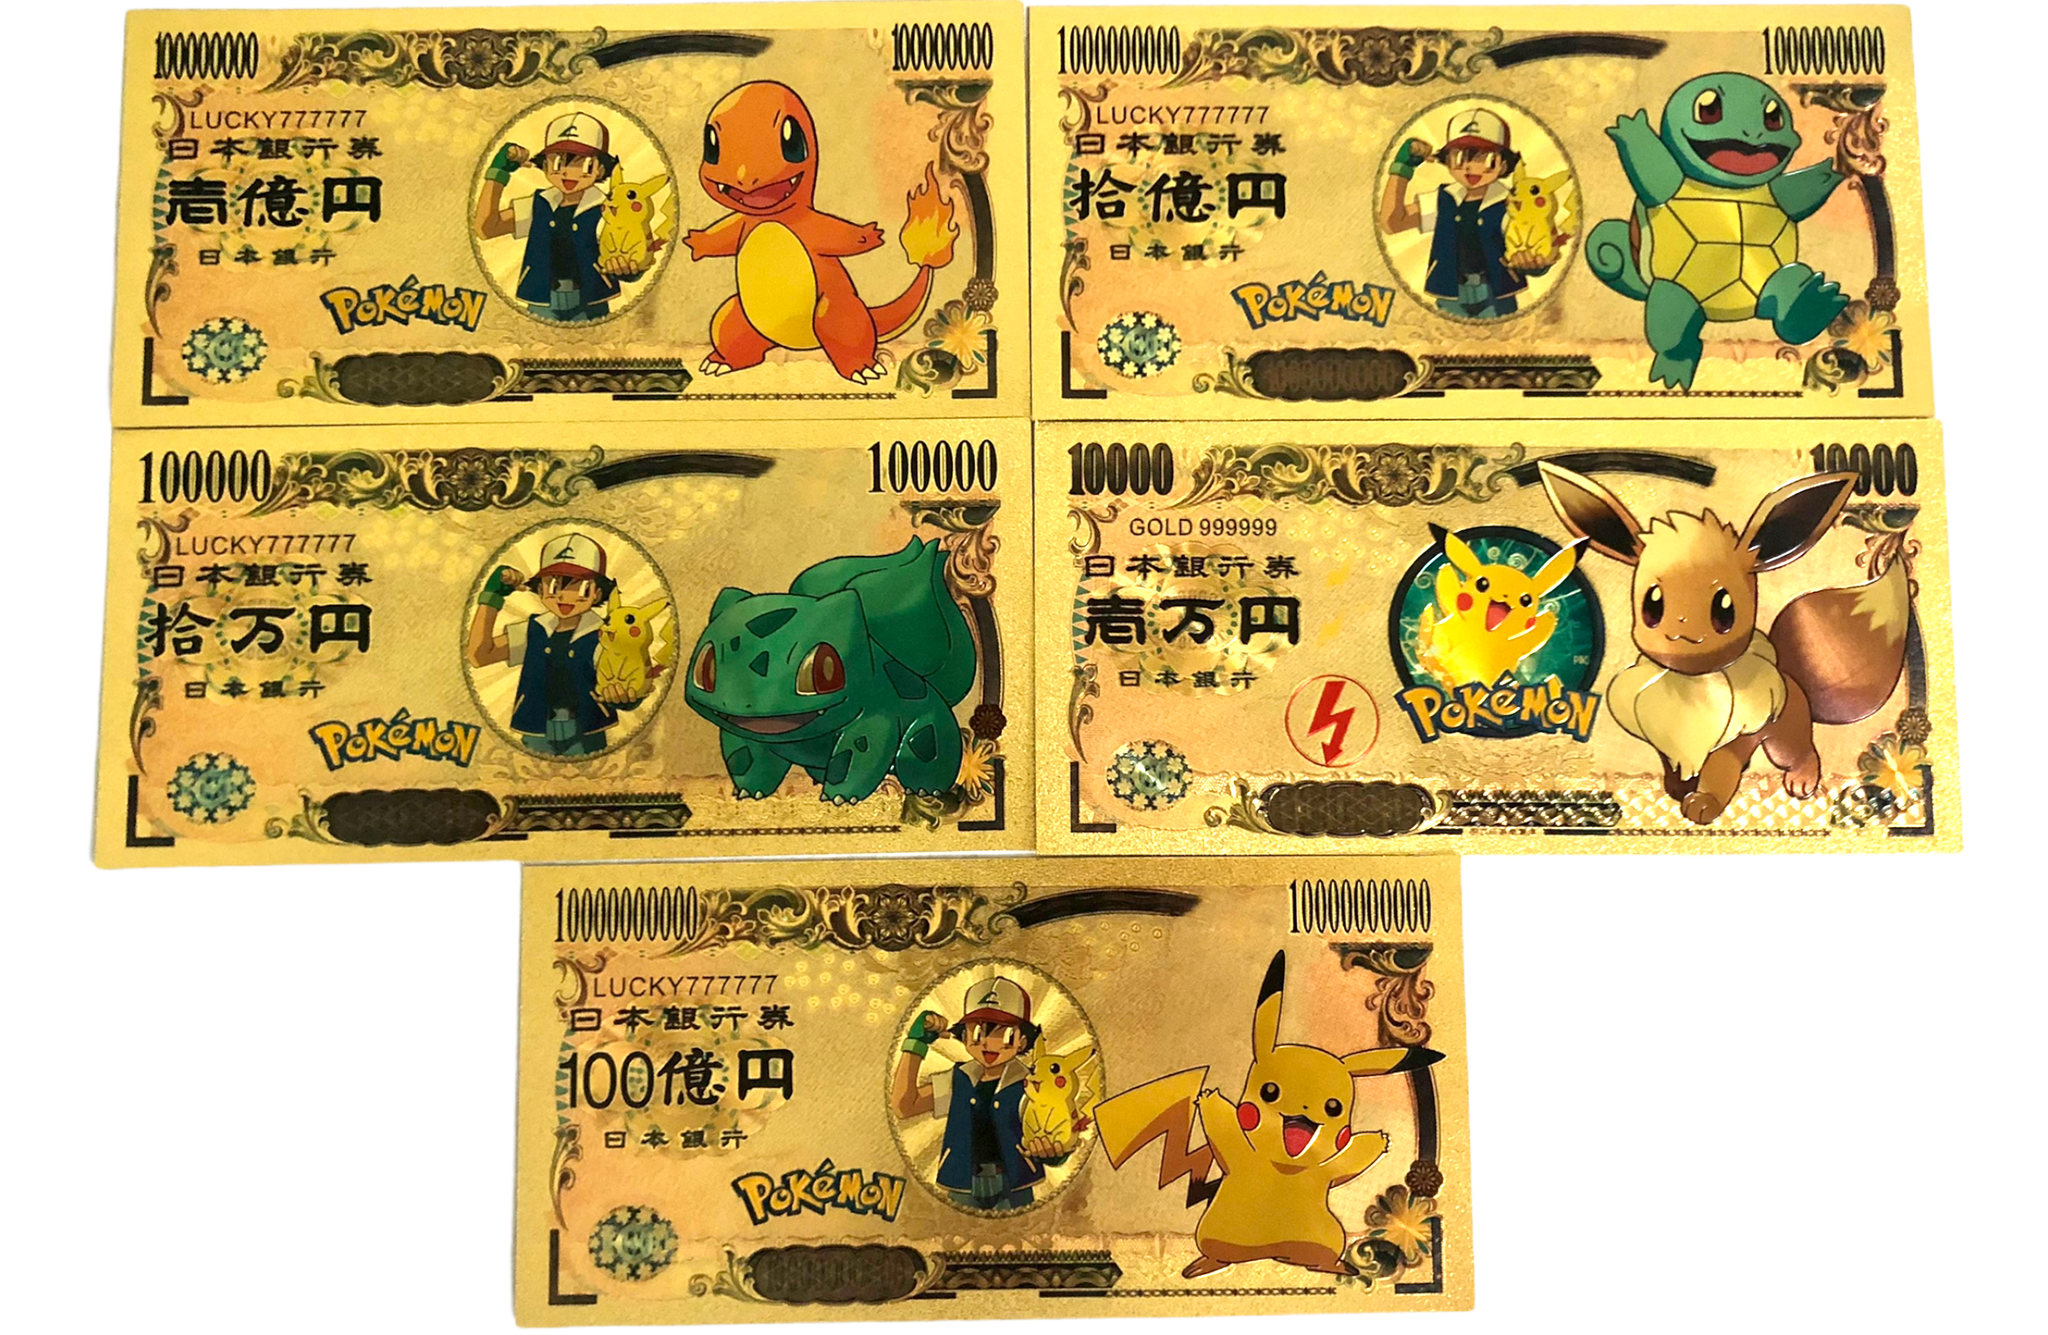 Pikachu, Eevee, Squirtle, Bulbasaur and Charmander Custom Metal